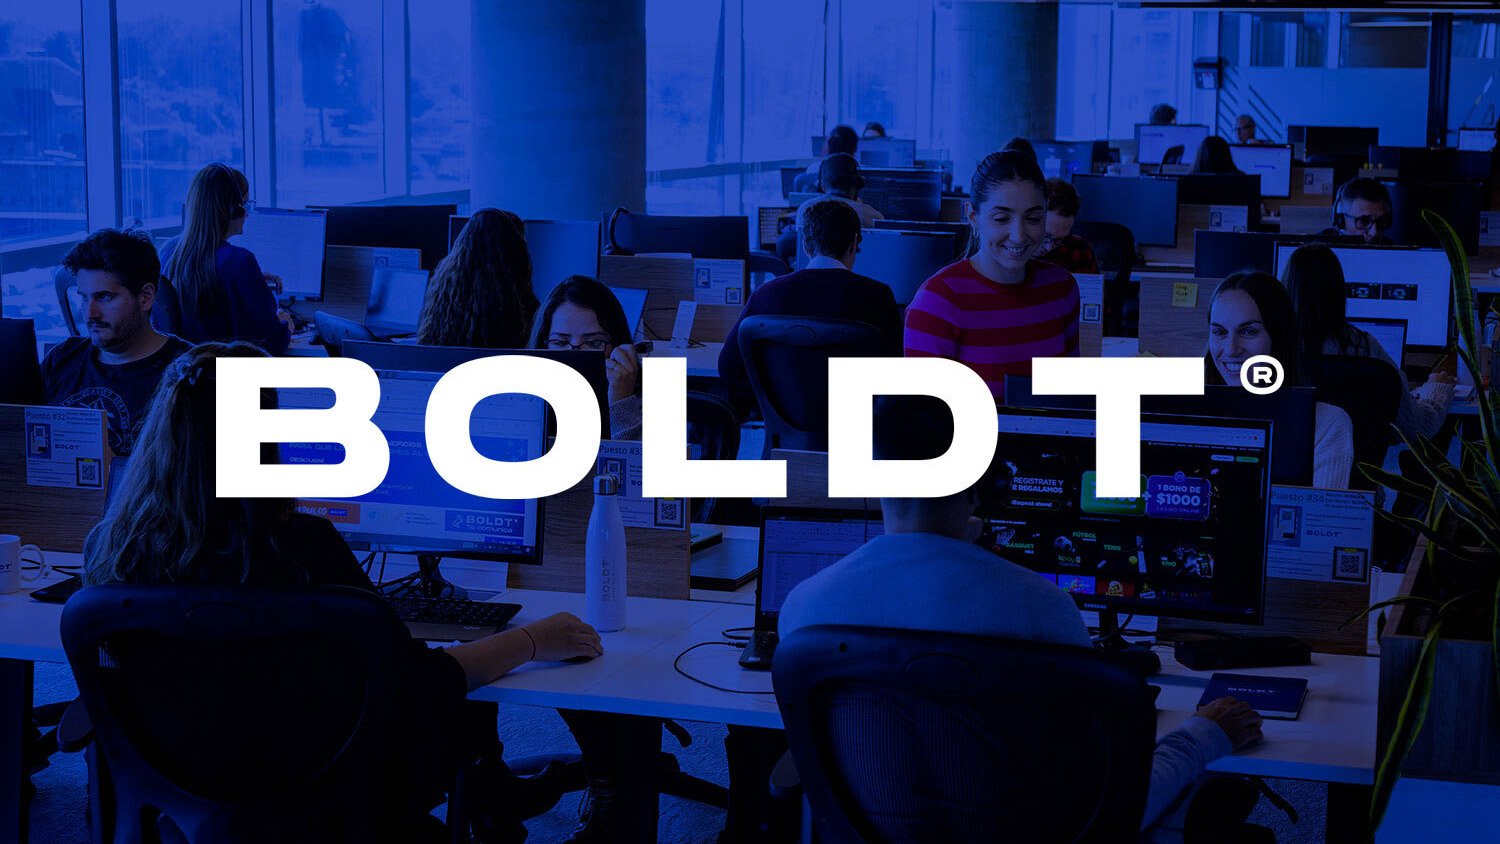 Boldt concretó la escisión del grupo empresarial y divide su capital social en cuatro compañías